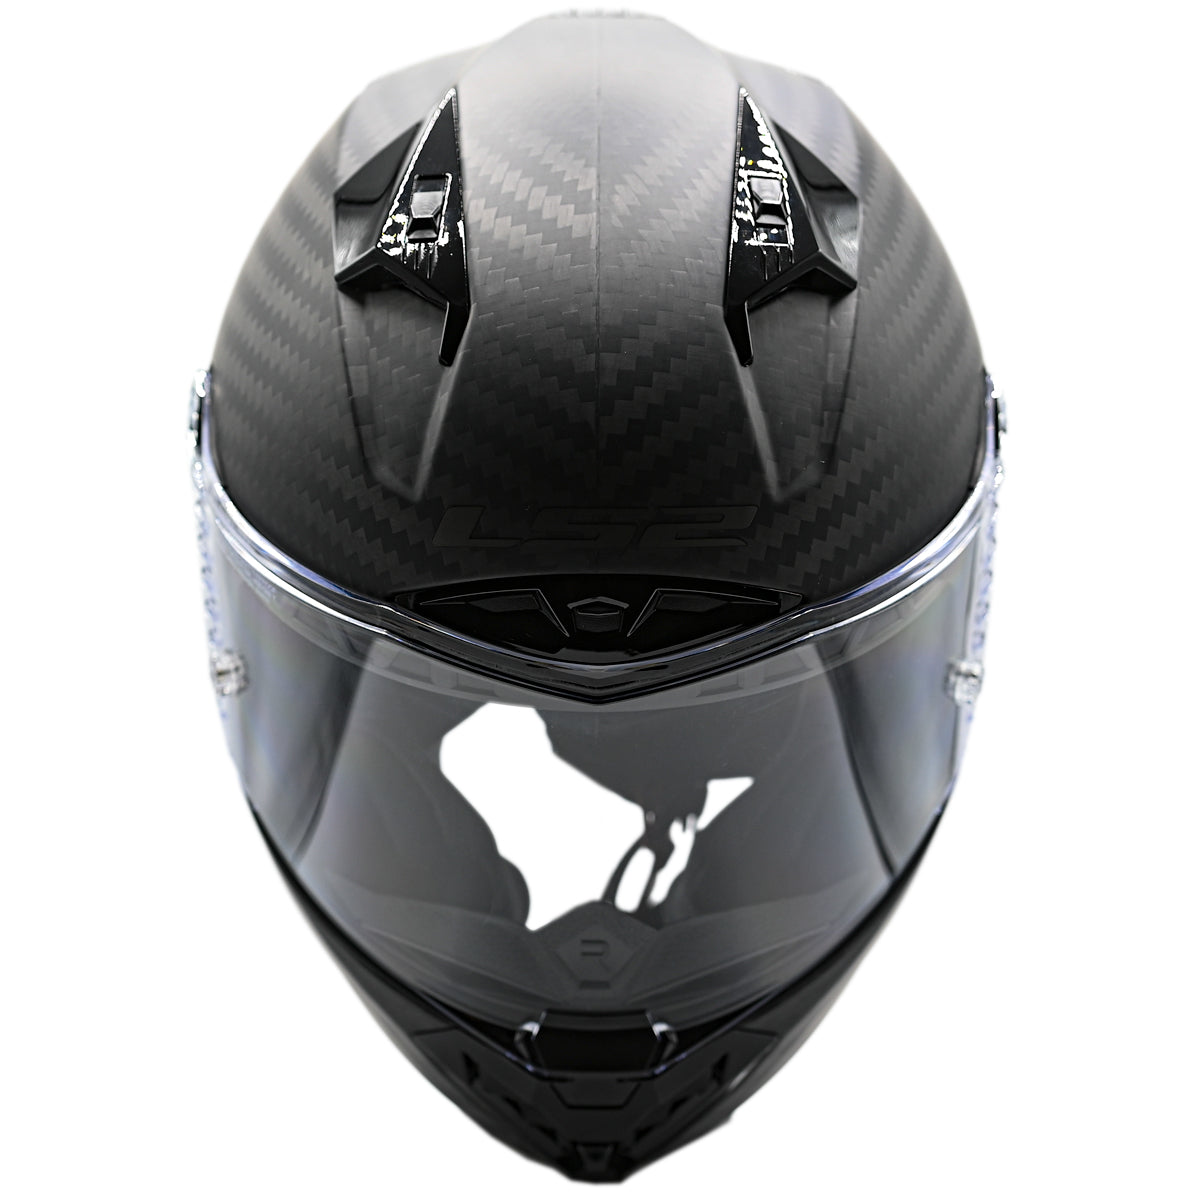 LS2 Helmets Thunder C Solid Motorcycle Full Face Helmet